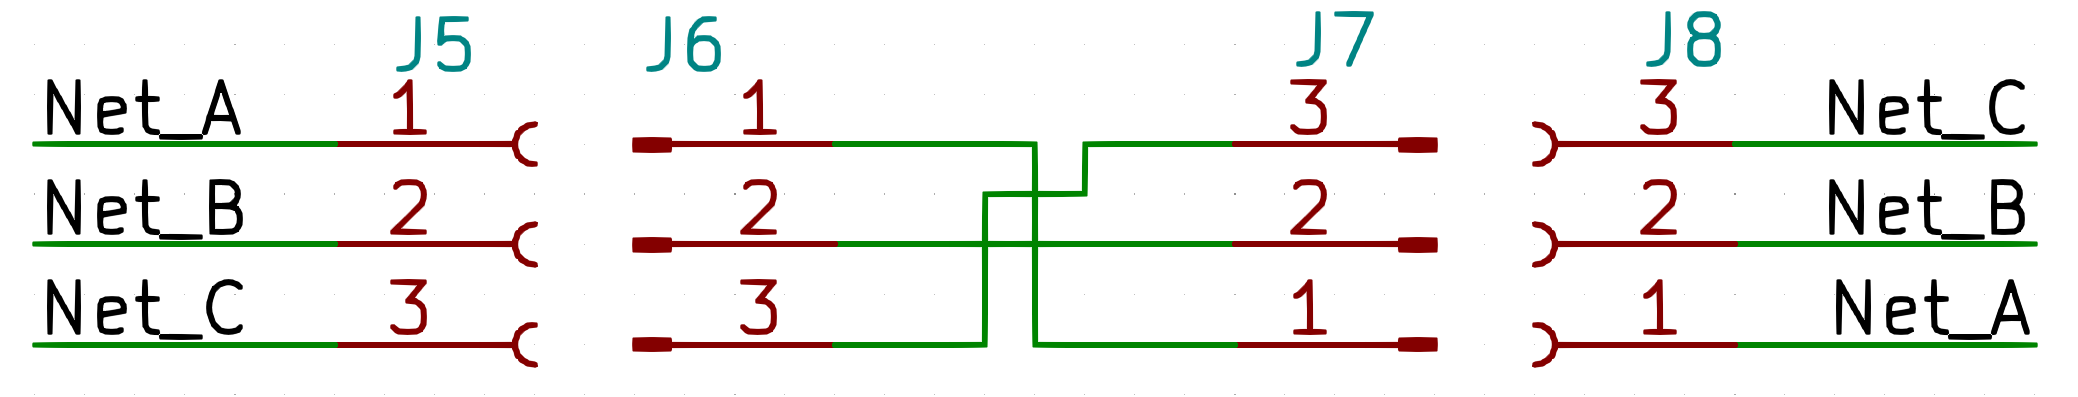 Reversed wiring schematic